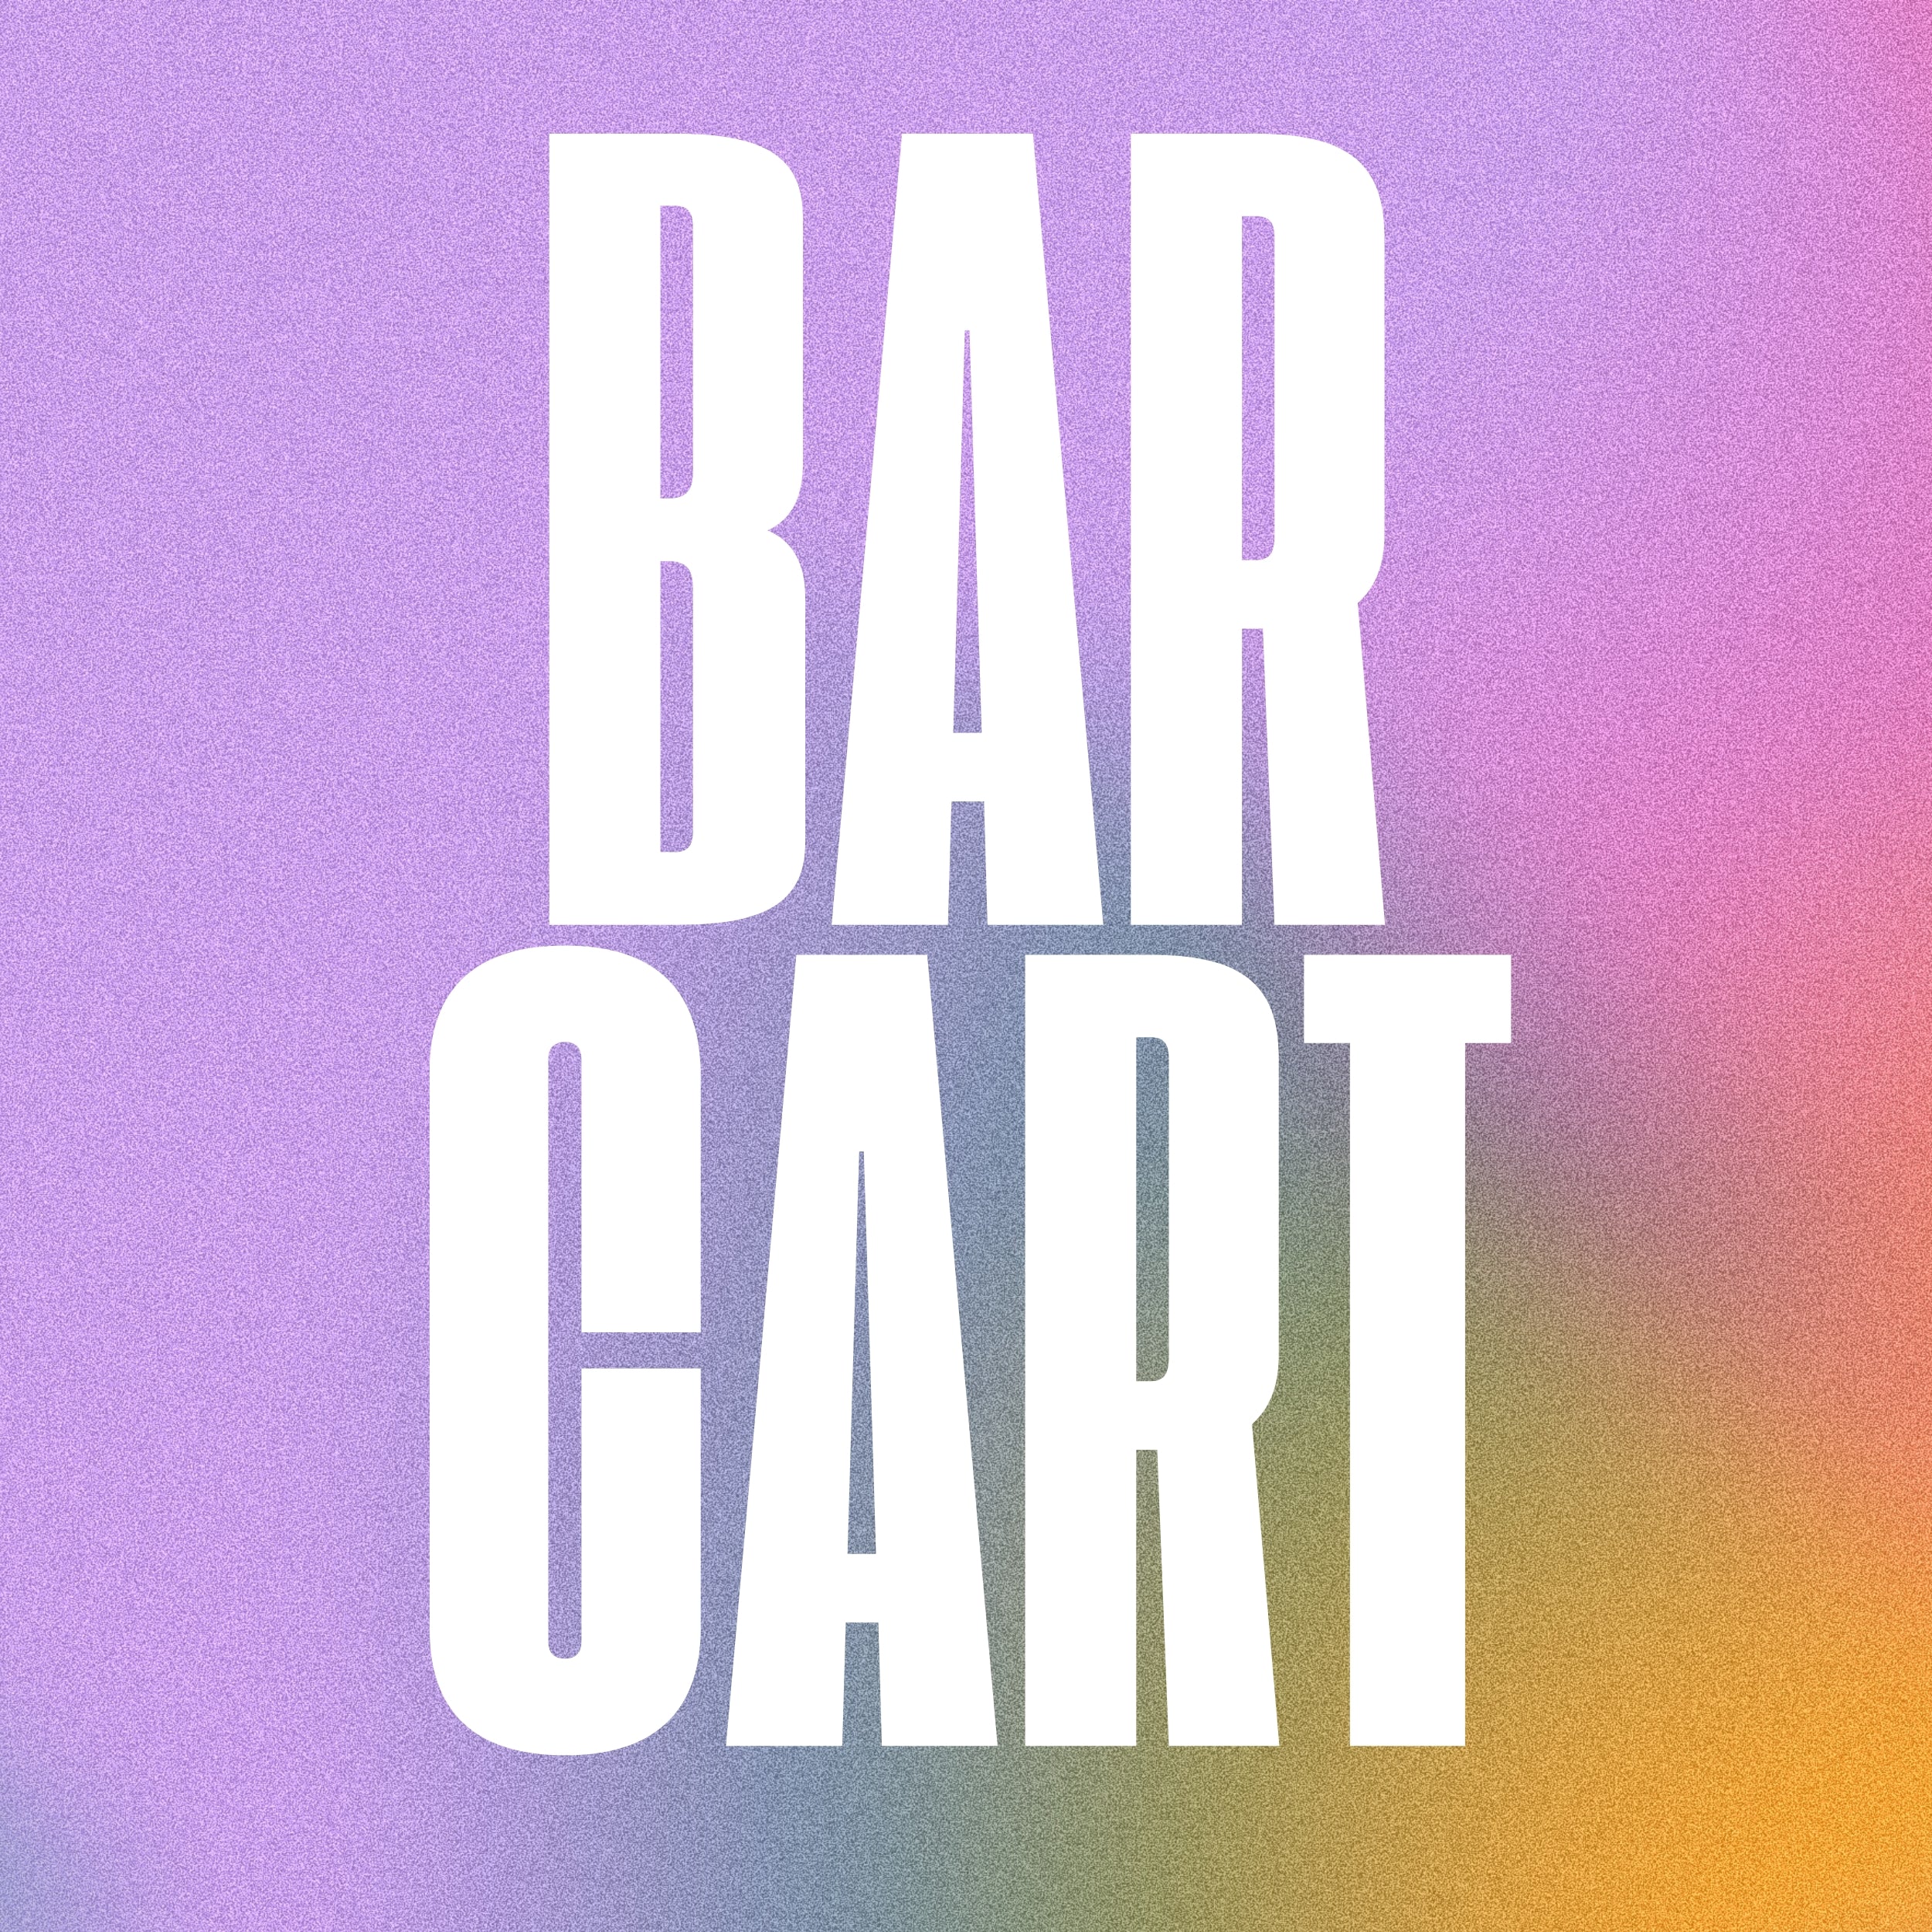 Bar cart collection